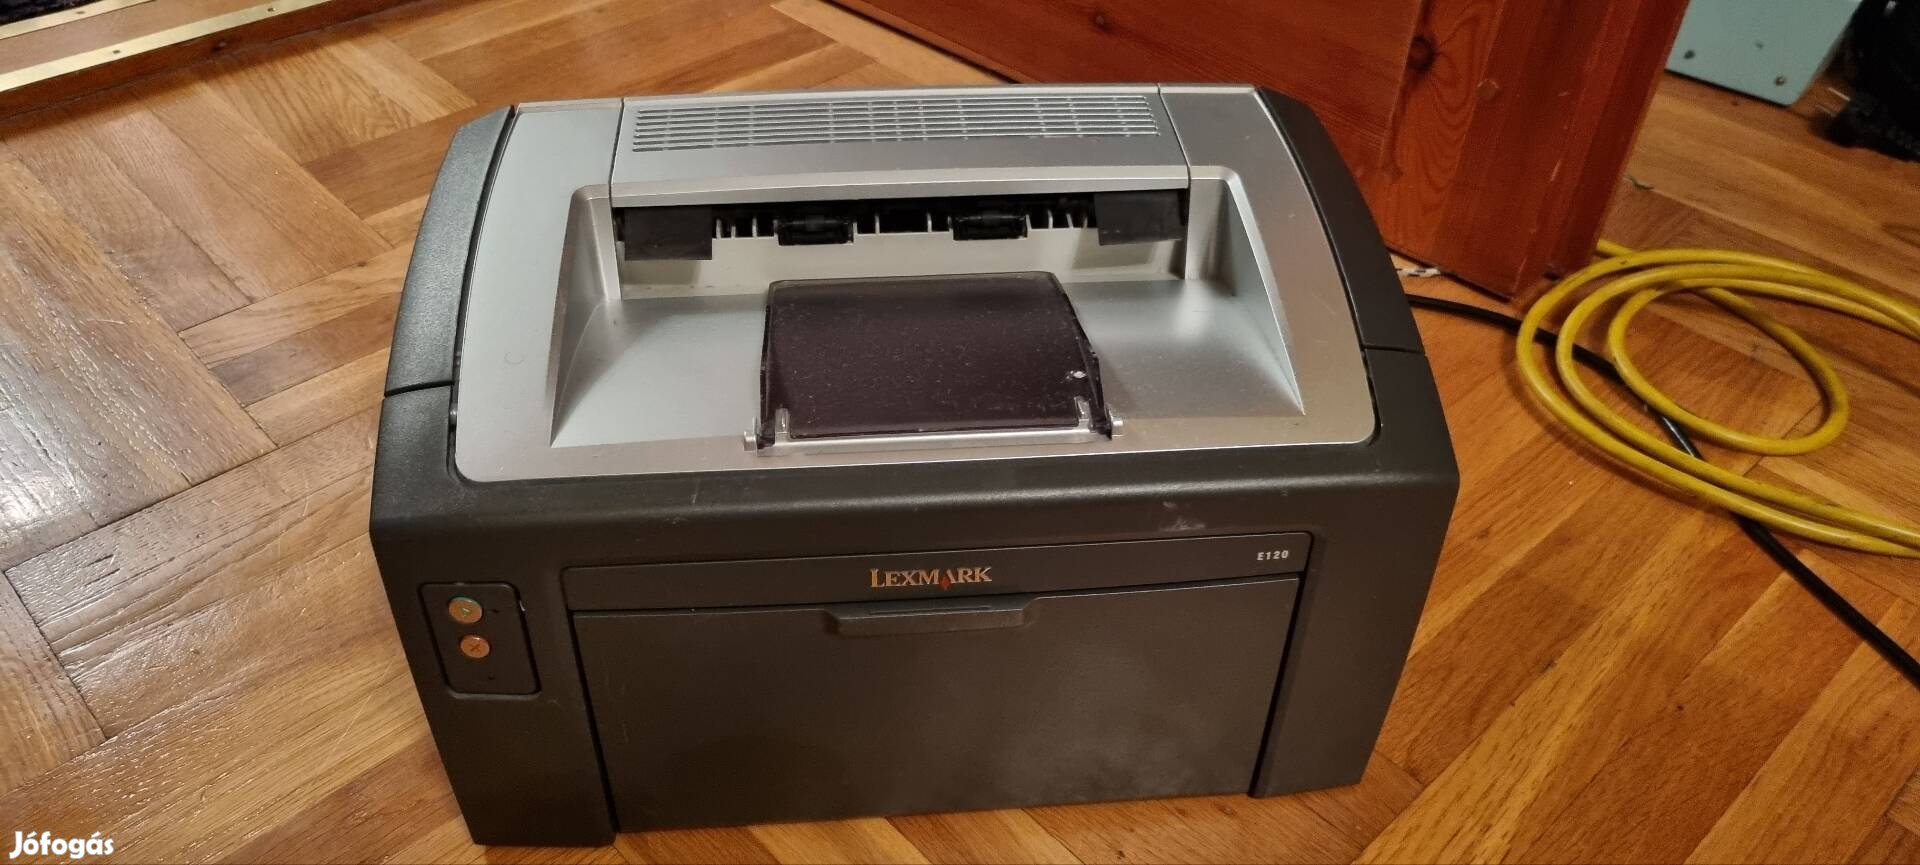 Lexmark E120 lézer nyomtató 